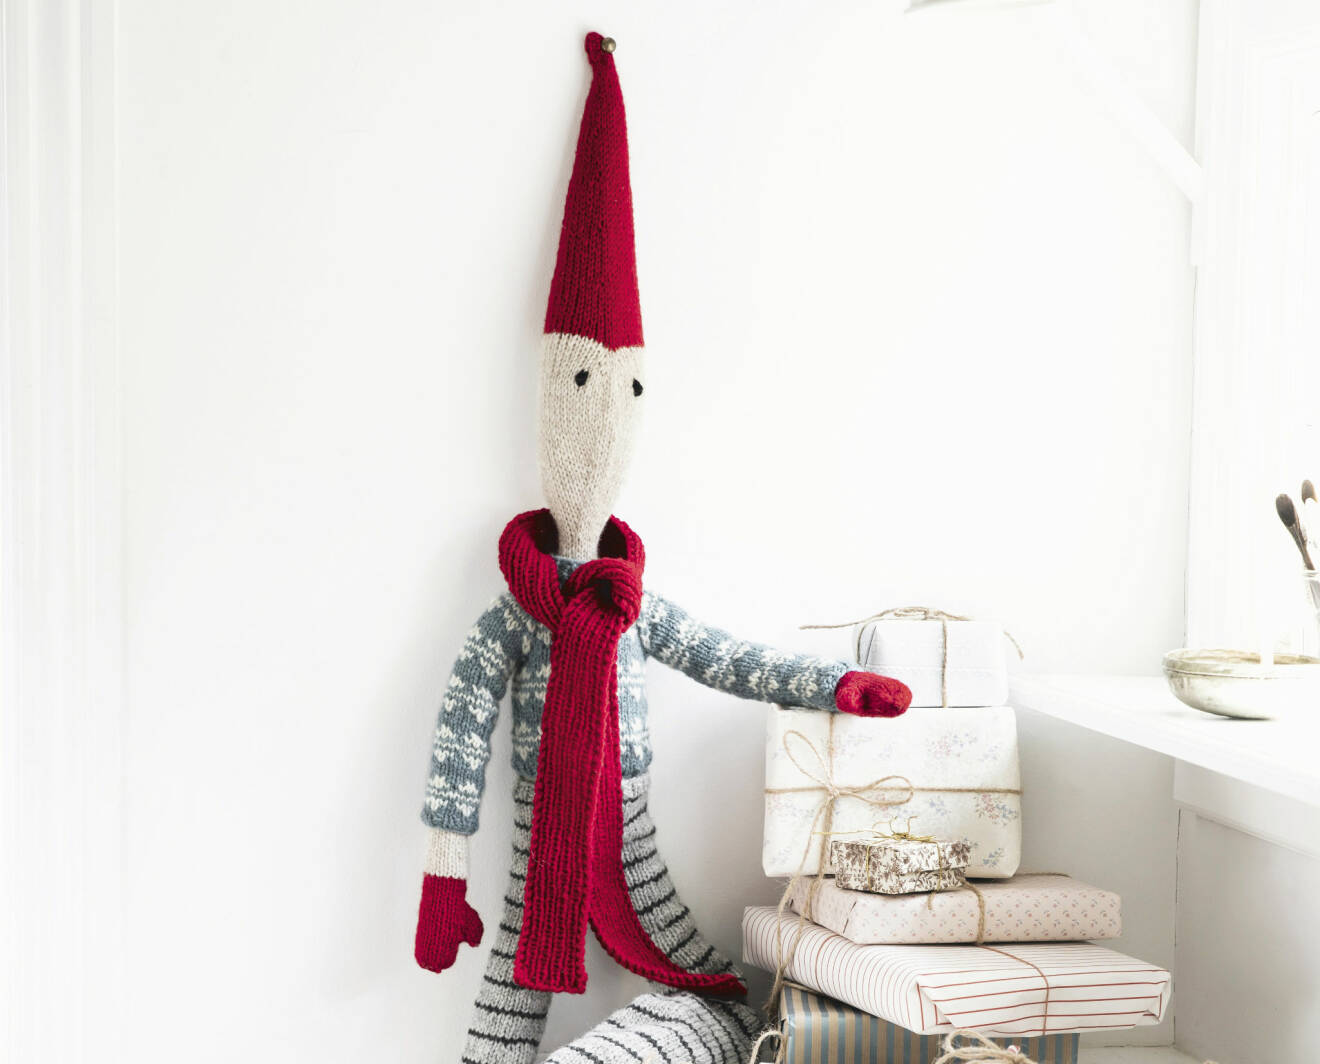 Detaljbild av stickad jultomte som är fäst på väggen och håller armen på en hög julklappar.